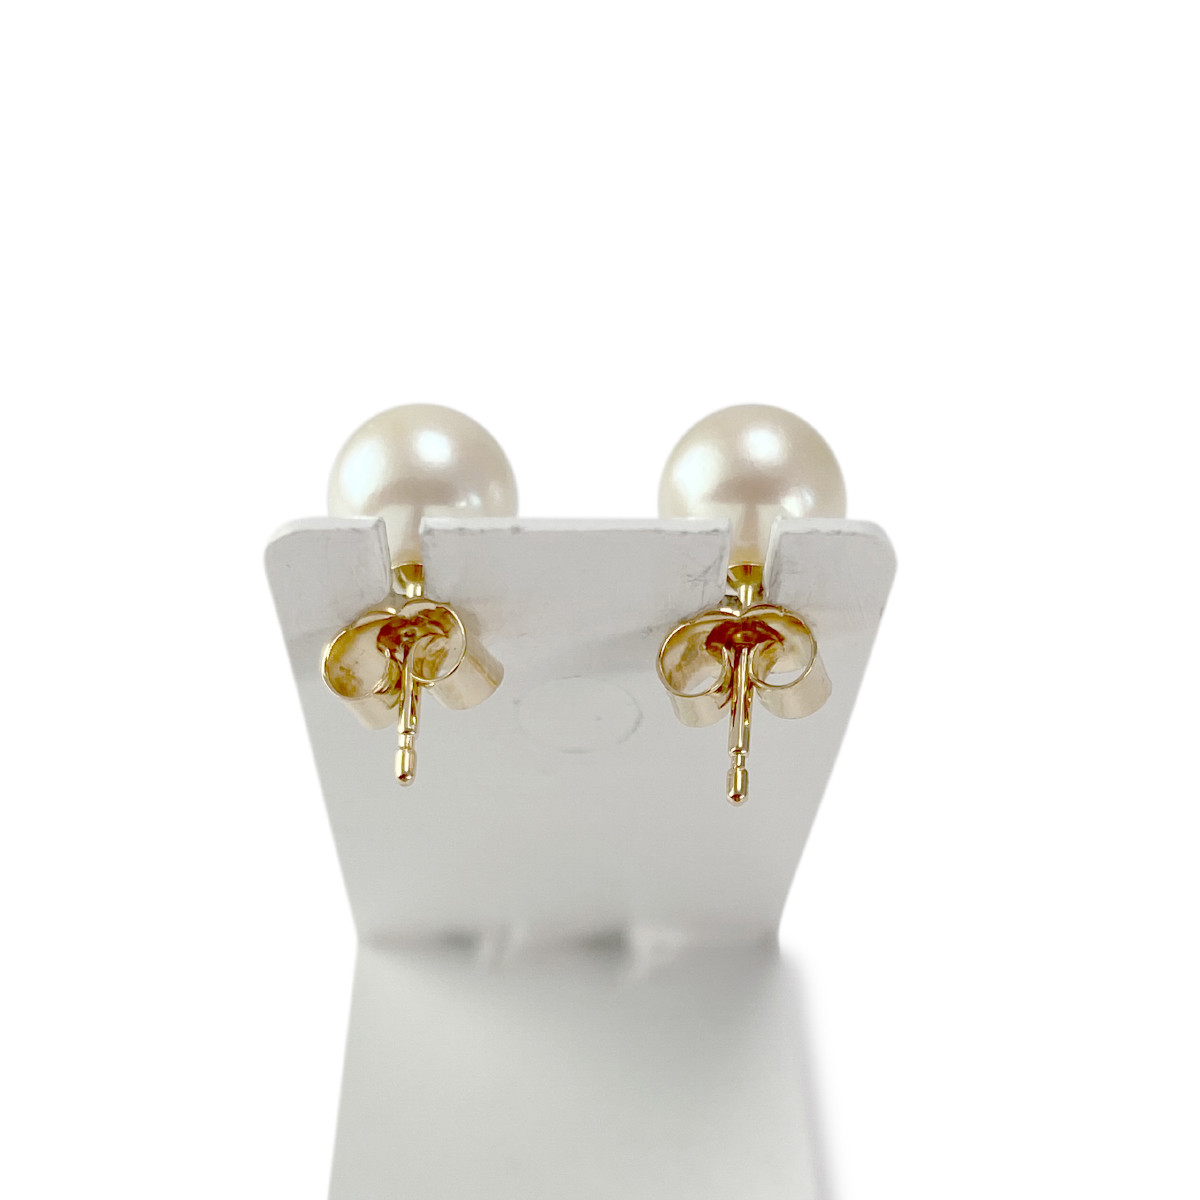 Boucles d'oreilles d'occasion or 750 jaune perles de culture - vue 3